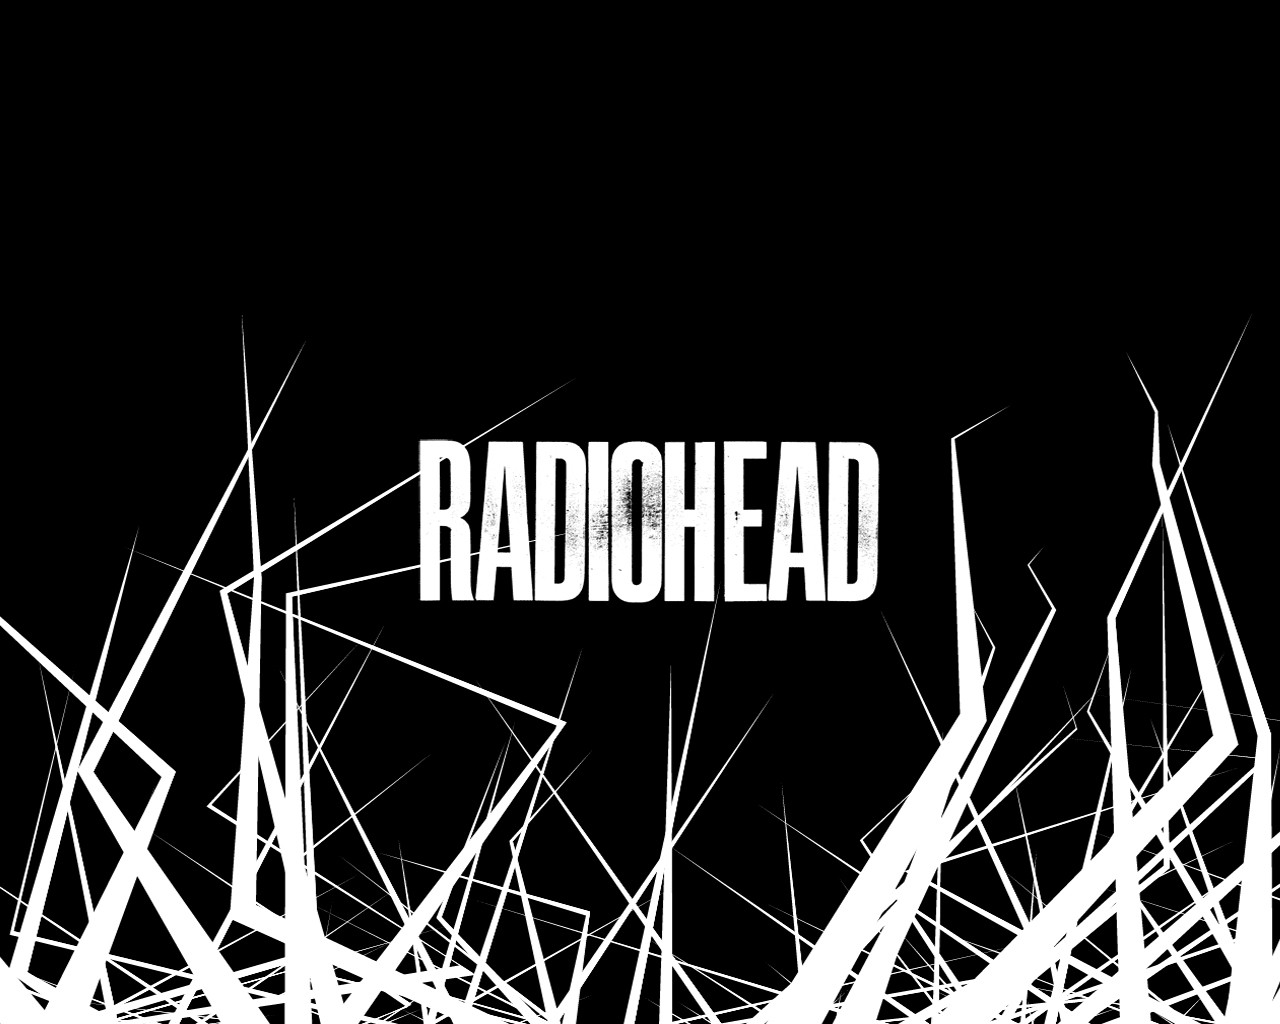 Radiohead Res: 1280x1024 / Size:181kb. Views: 28718